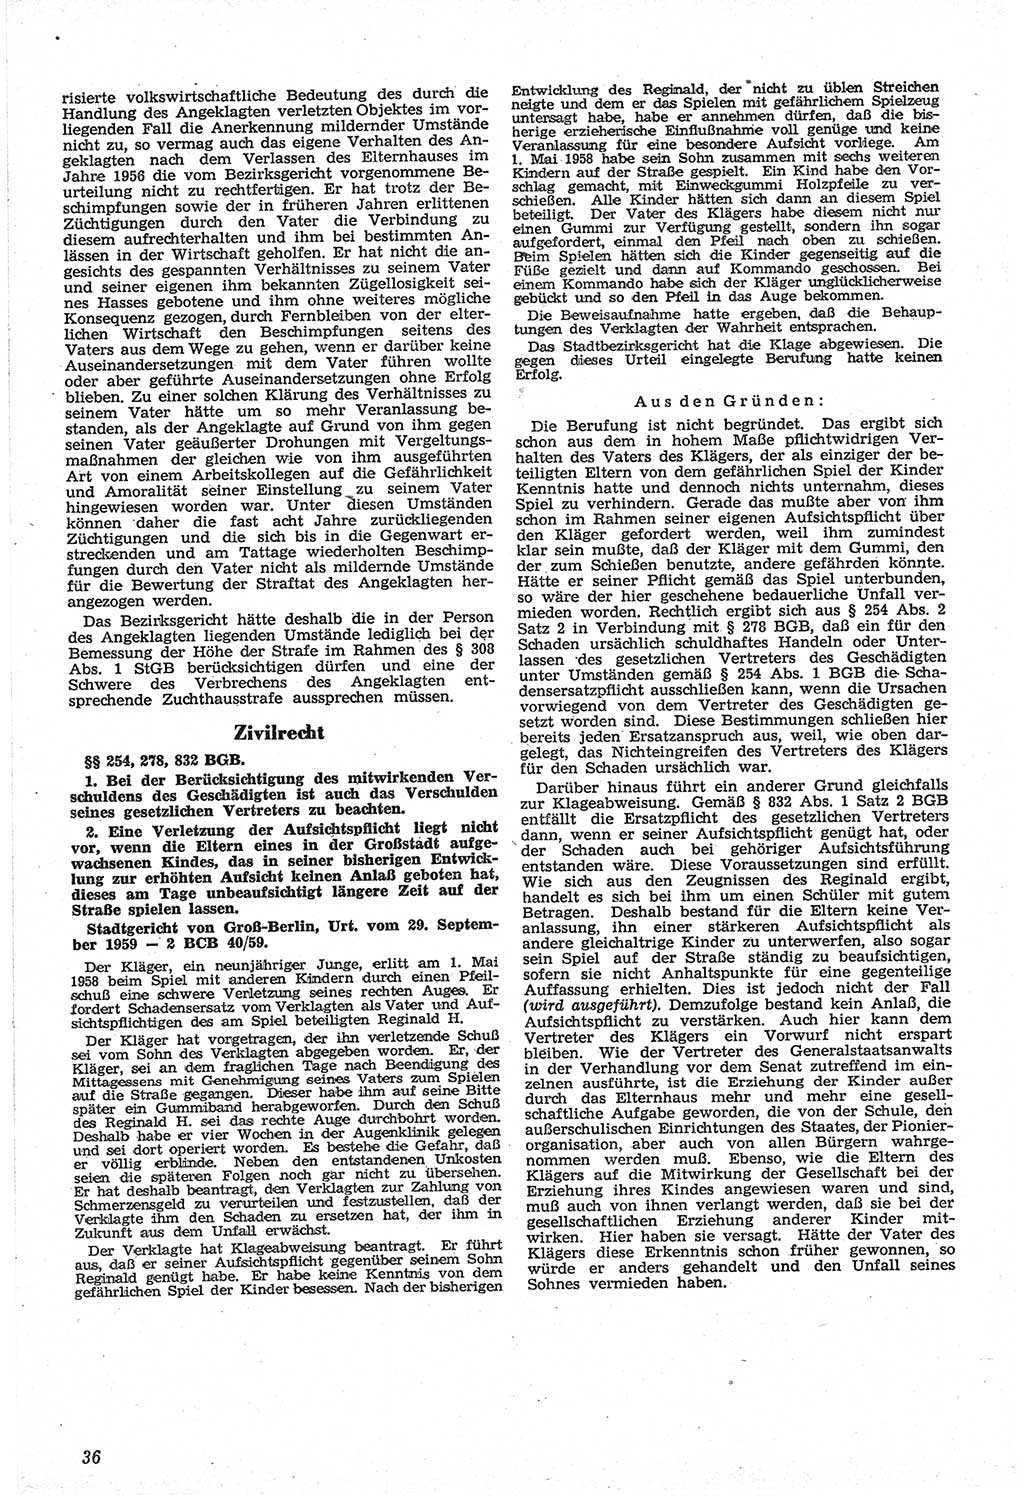 Neue Justiz (NJ), Zeitschrift für Recht und Rechtswissenschaft [Deutsche Demokratische Republik (DDR)], 14. Jahrgang 1960, Seite 36 (NJ DDR 1960, S. 36)